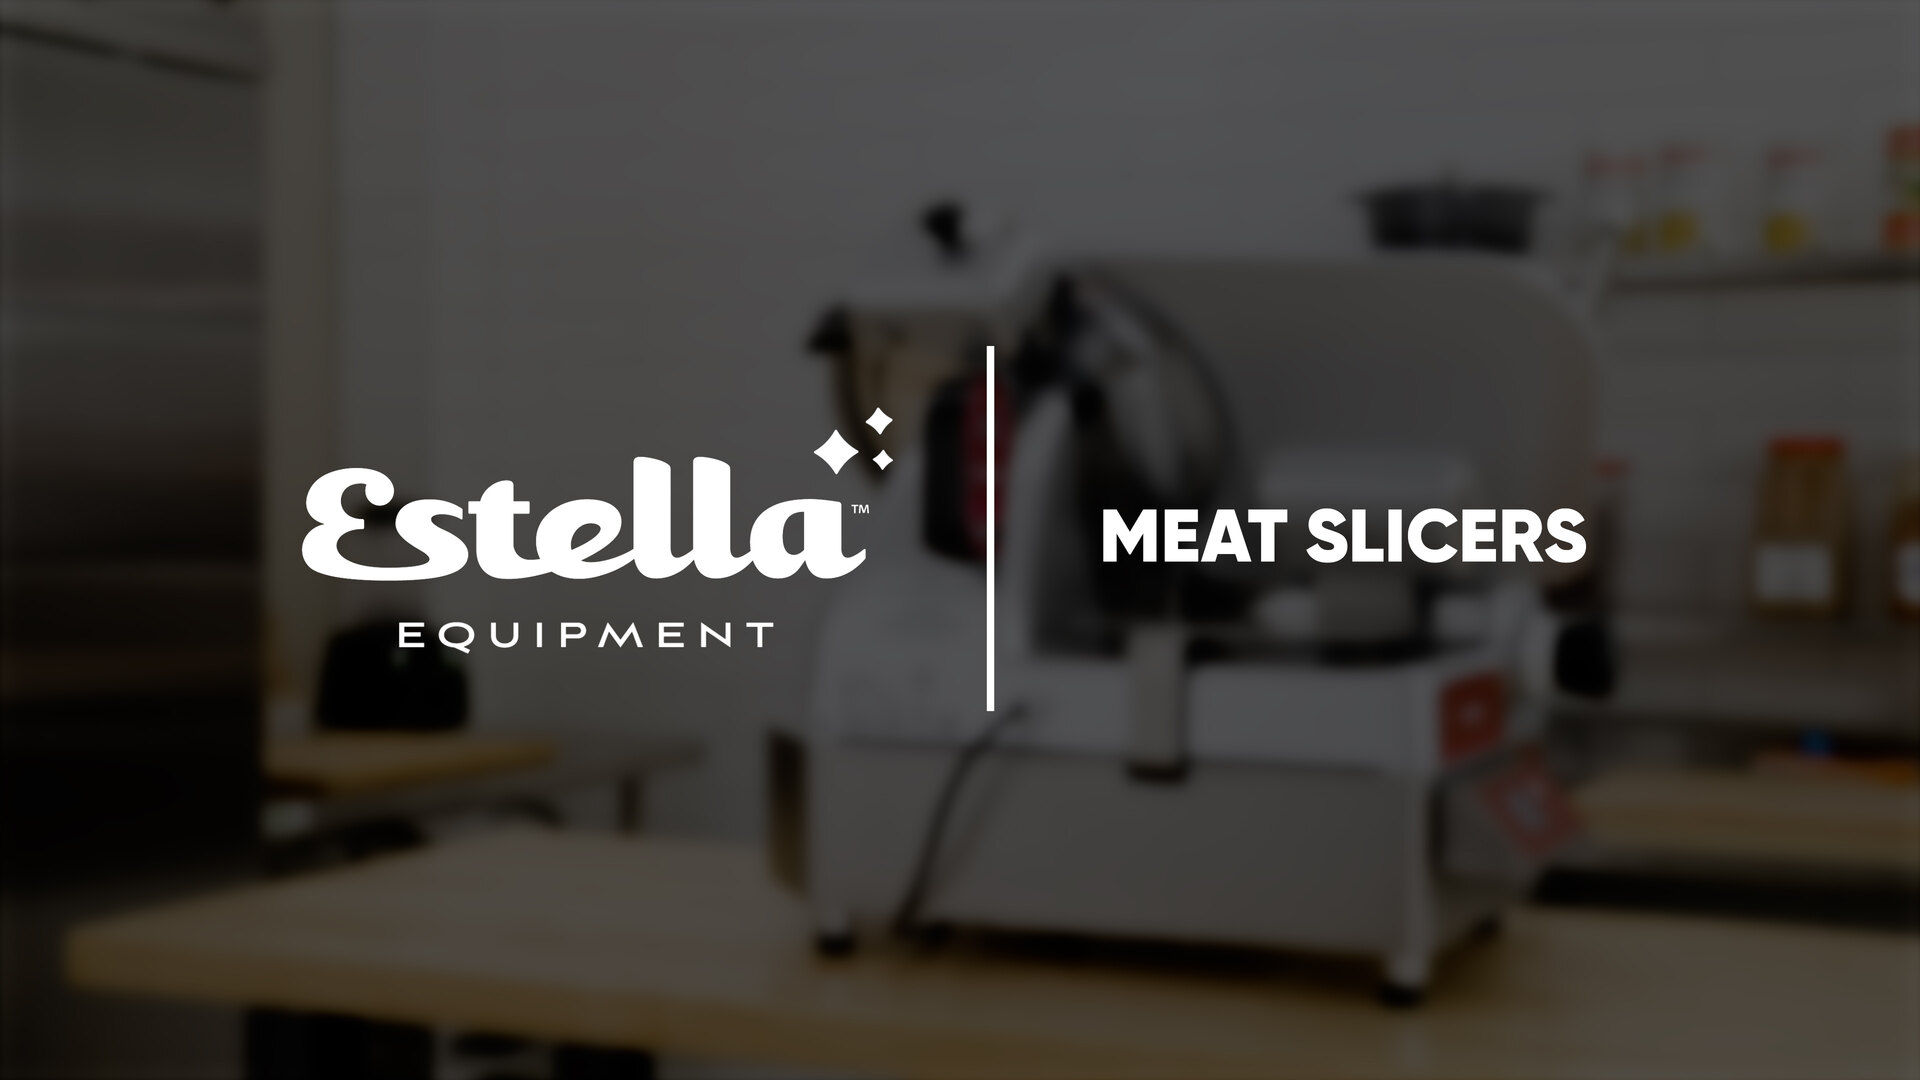 https://cdn.webstaurantstore.com/images/videos/extra_large/meat_slicer_thumb_estella.jpg